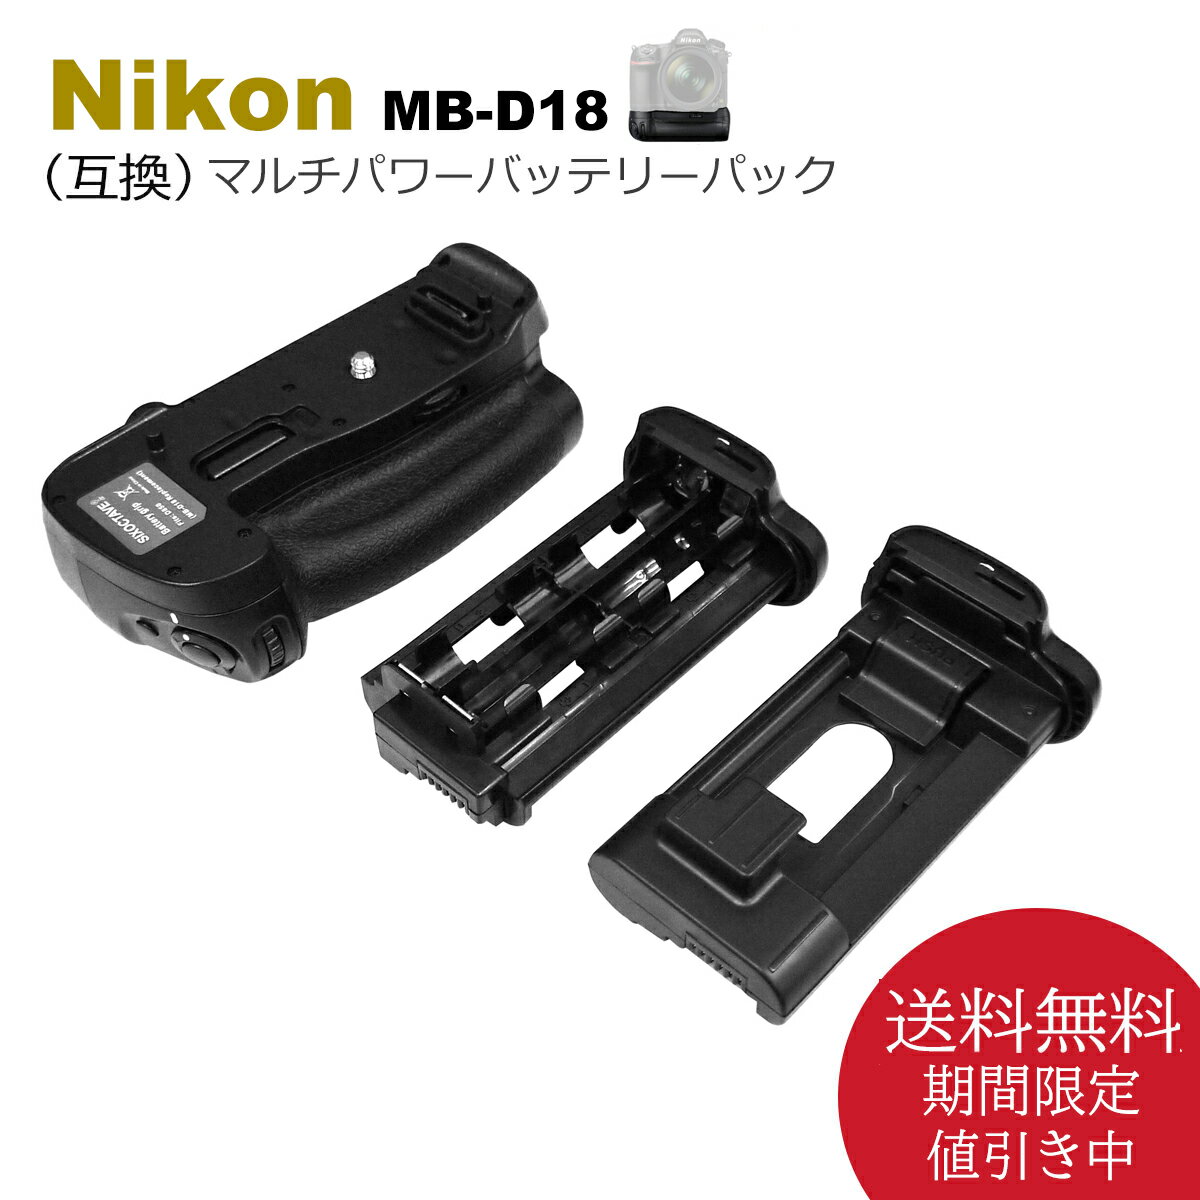 Nikon D850 用 マルチパワーバッテリーパック 送料無料 MB-D18 グリップ （互換品） 一眼レフカメラ対応 （別売り EN-EL15a EN-EL15e EN-EL15c / EN-EL18 EN-EL18a EN-EL18b EN-EL18c / EH-5c EH-5b EP-5B BL-5 いずれかで使用可能）